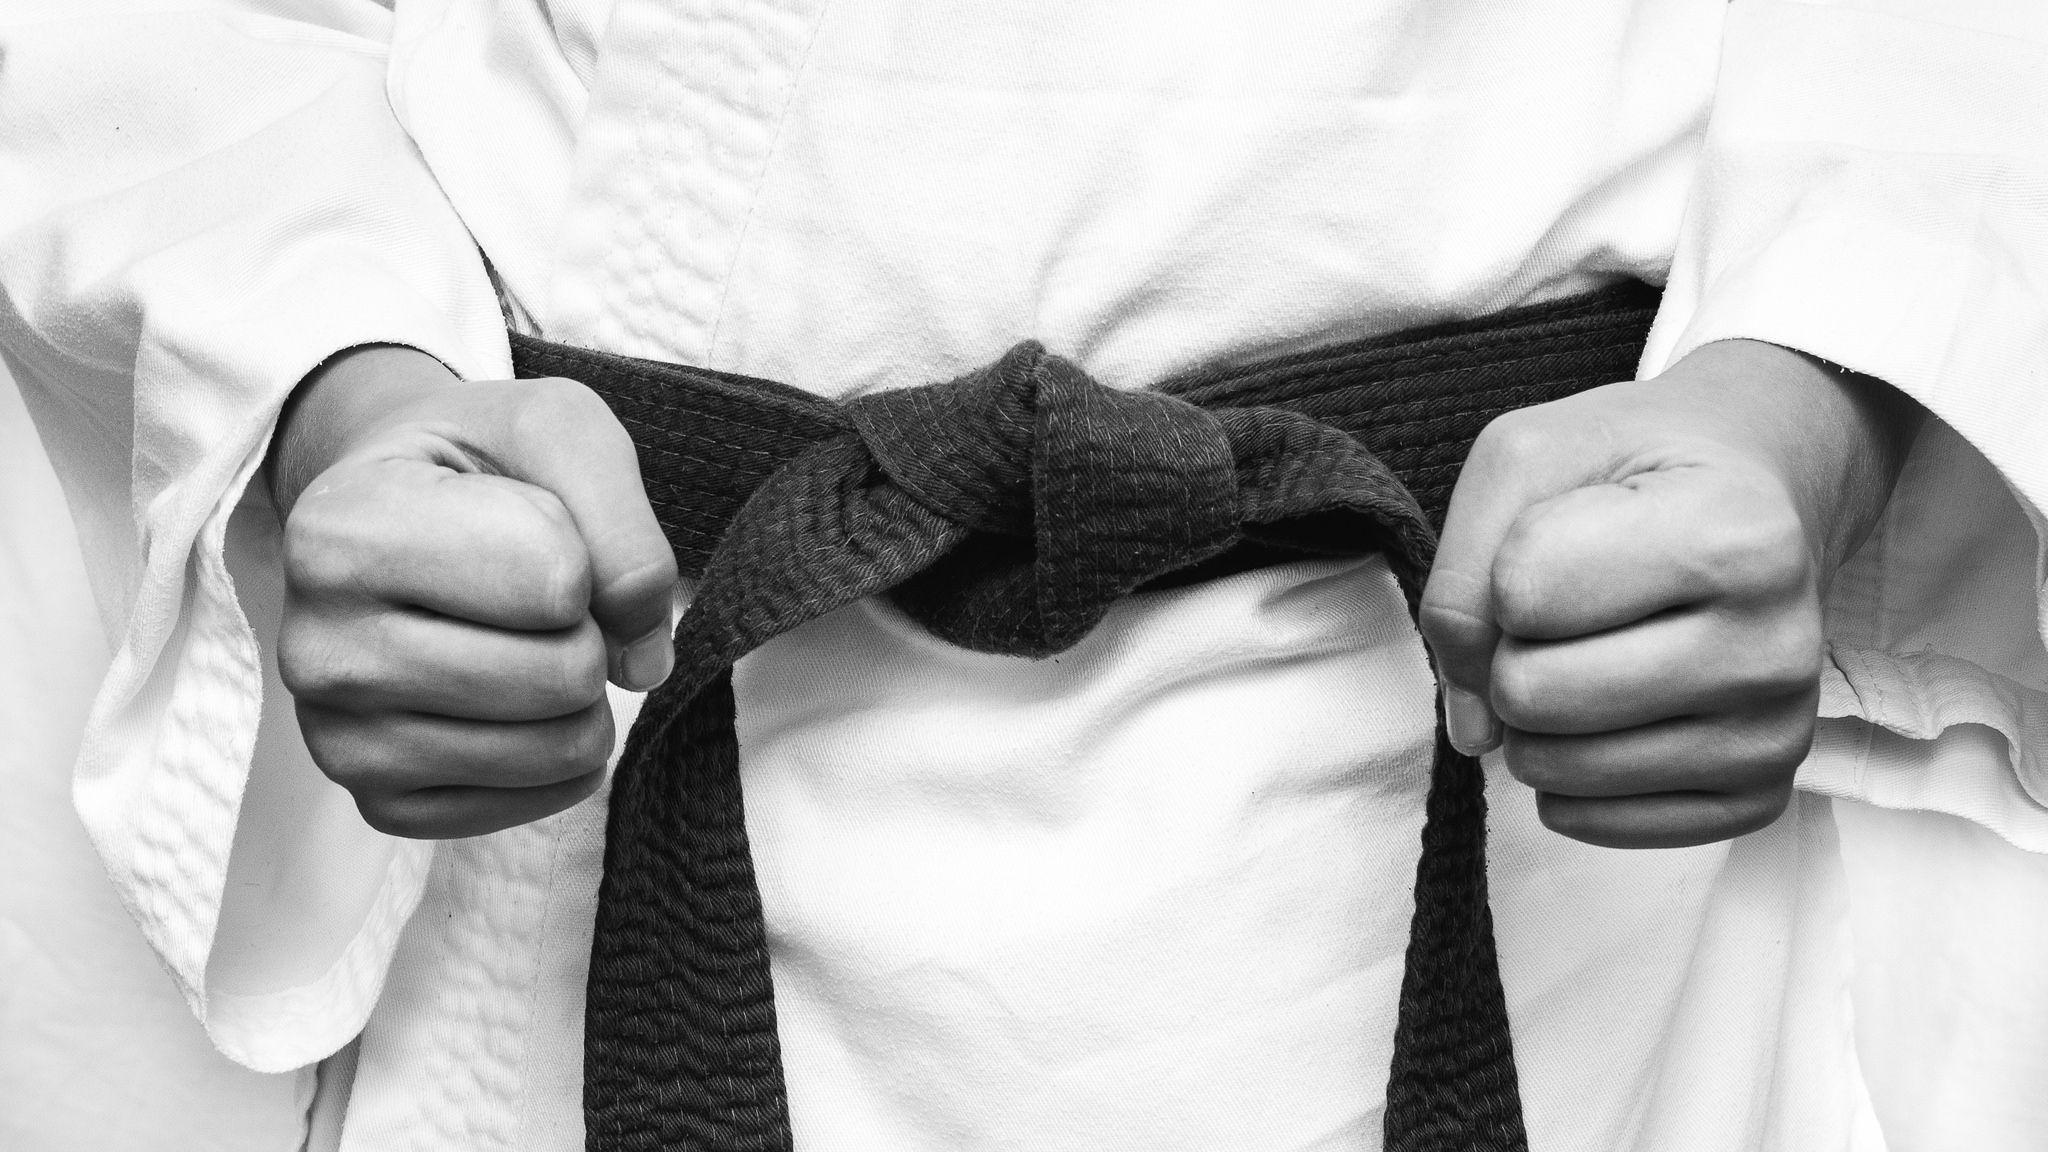 2048x1152 Hình nền: Karate, Kimono, đấu sĩ, Môn thể thao, nắm đấm 2048x1152